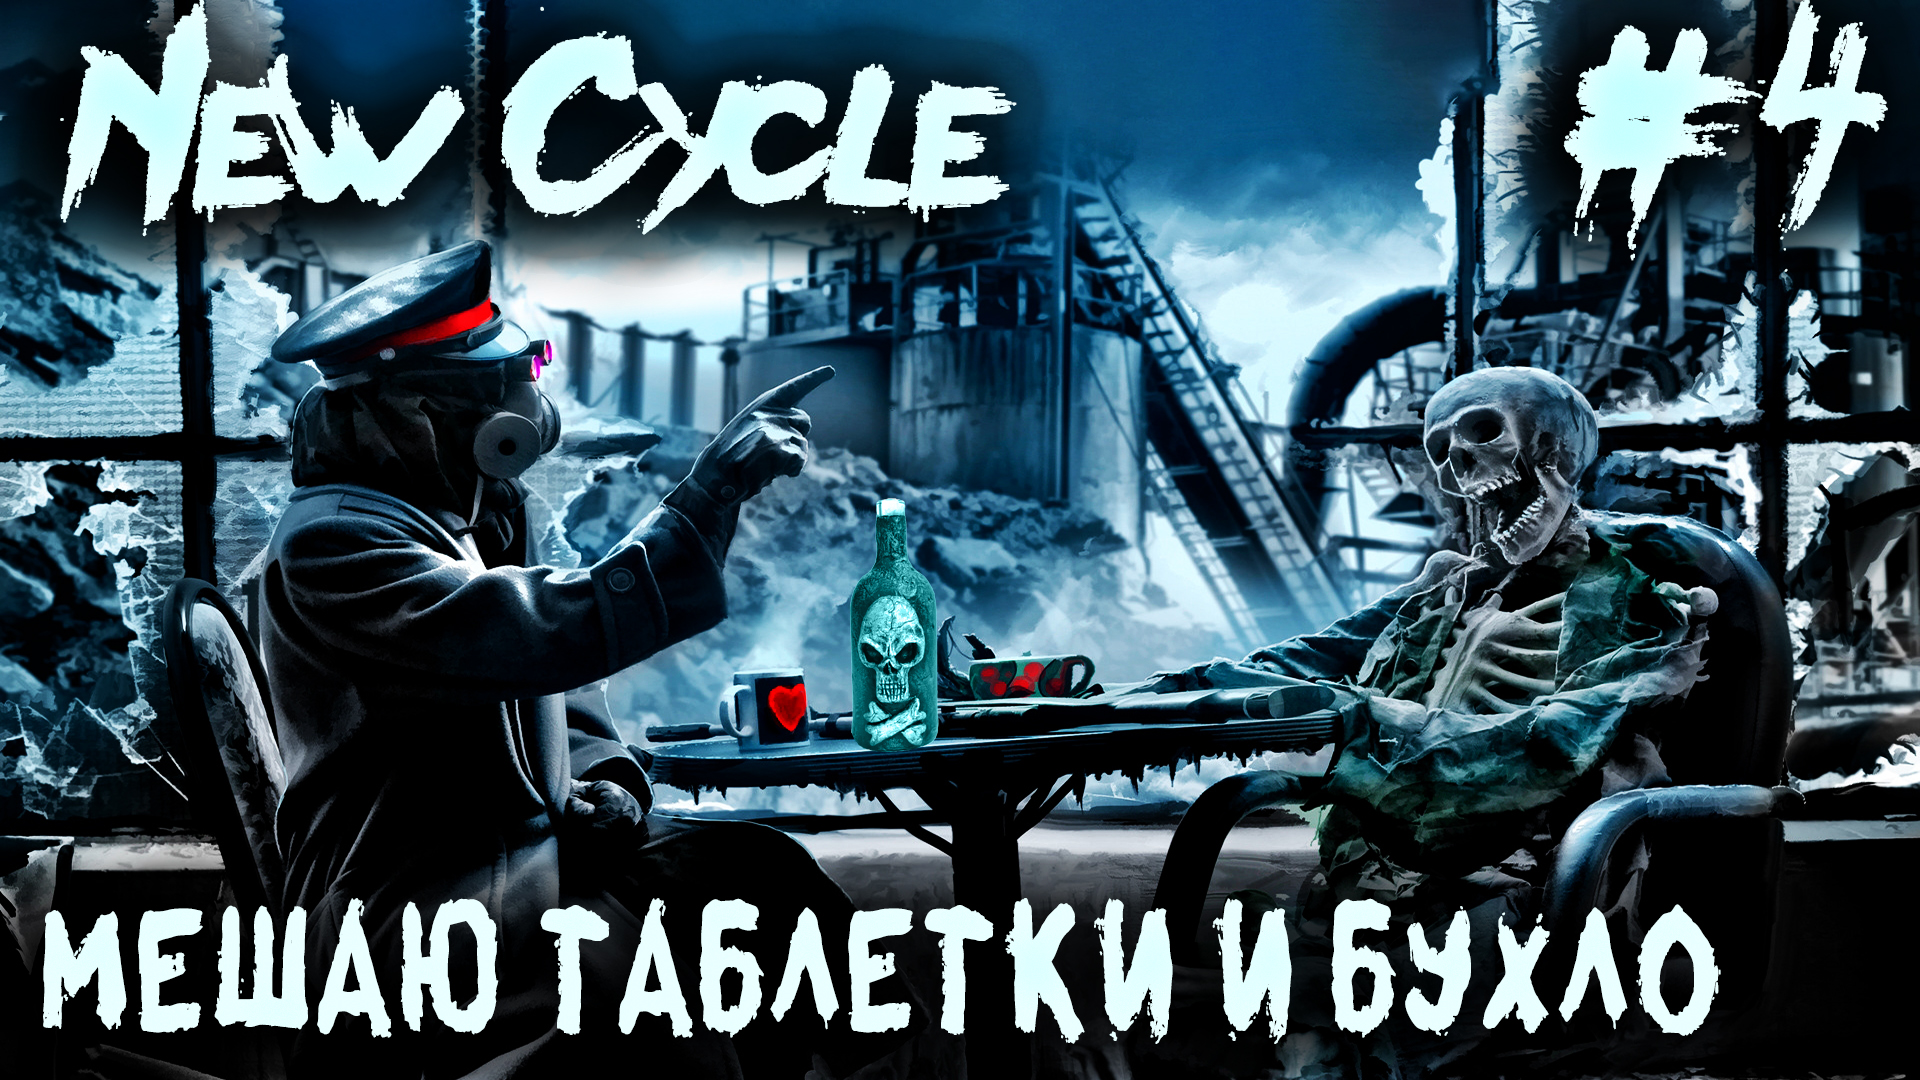 New Cycle - прохождение игры. Застройка глобальной карты, производство алкоголя и лекарств #4